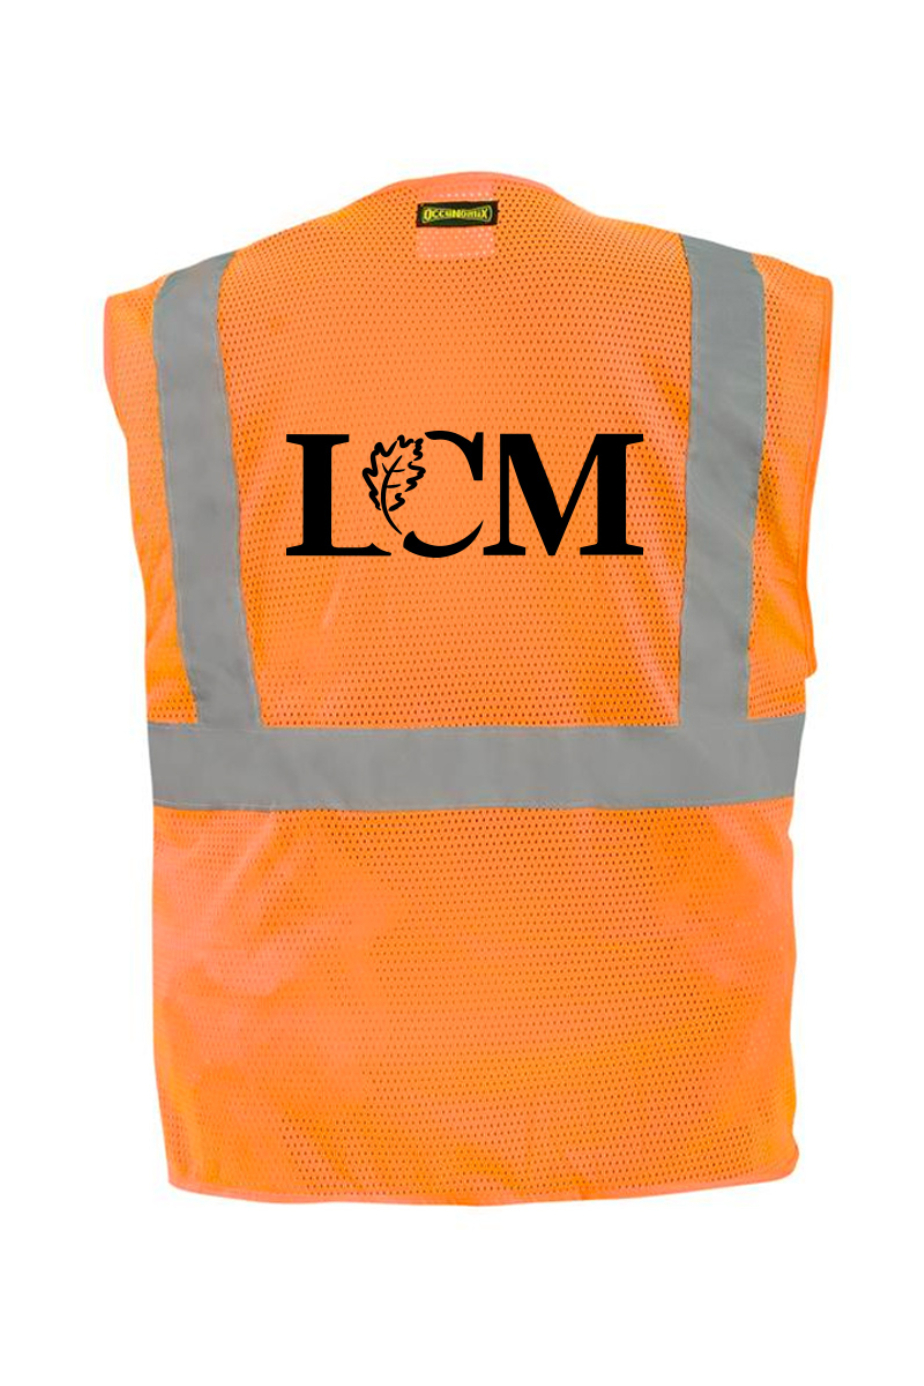 LCM  Safety Vests With Badge Pocket